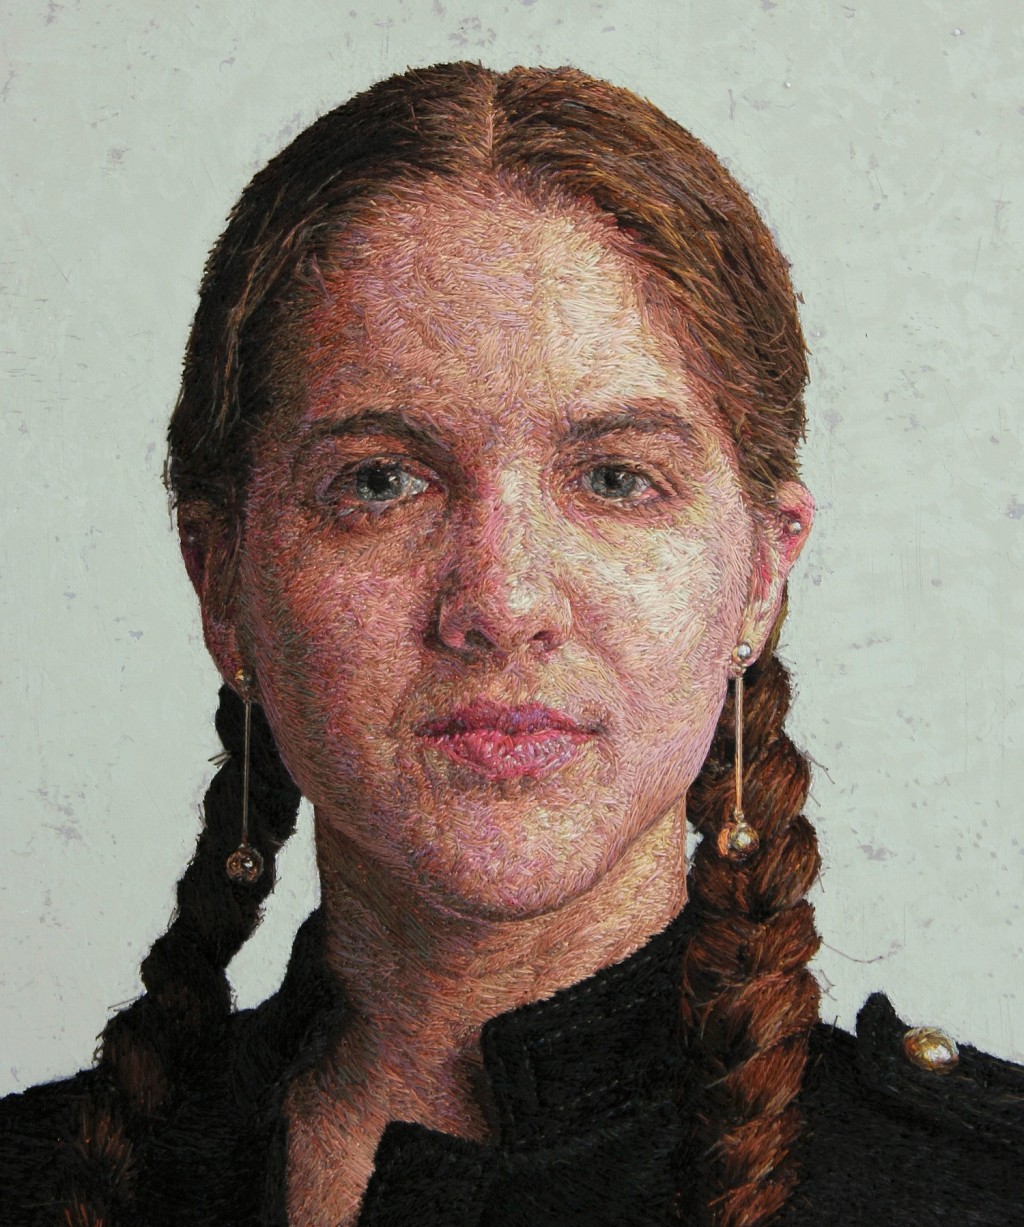 Невероятная портретная вышивка от Cayce Zavaglia художница, Кейси, методику, портреты, использует, разработала, нитками», технику, цвета, оттенков, наложения, красок, широкую, Американская, фактуру, палитру«На, объем, которая, протяжении, многих